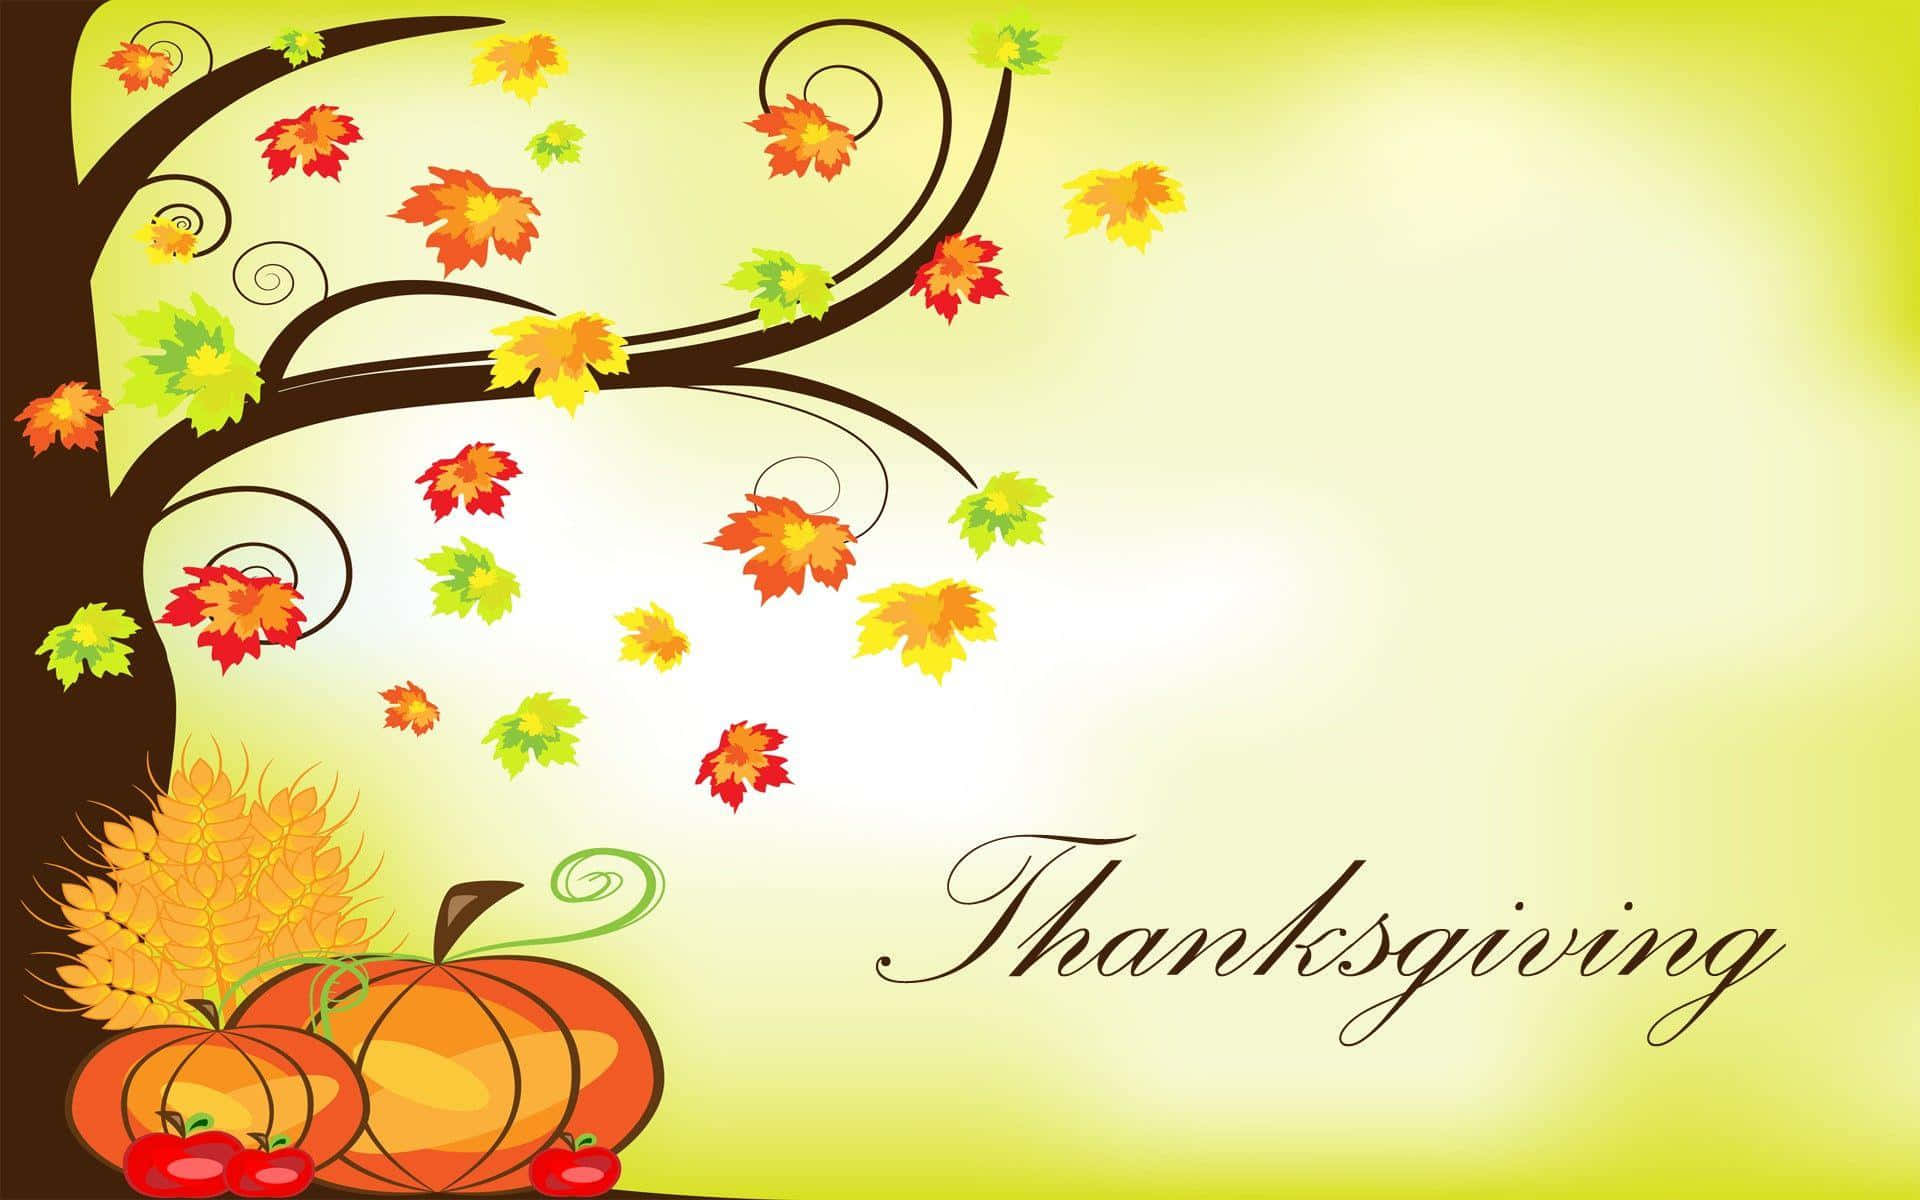 Firaen Glad Thanksgiving Med Vänner Och Familj!